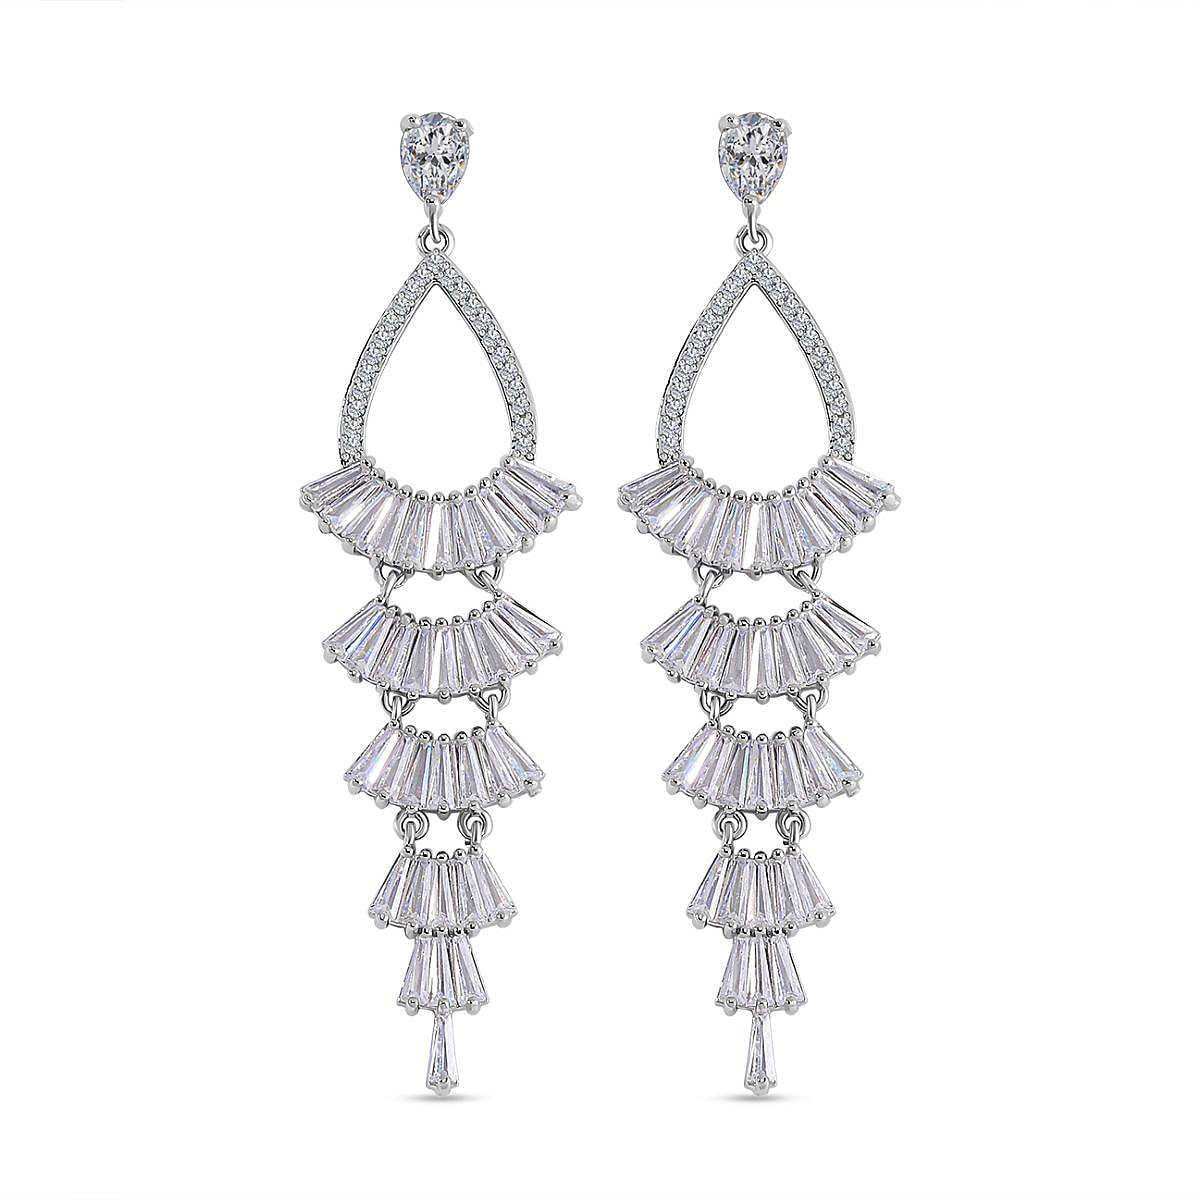 Cubic Zirconia Dangle Earrings in Silver Tone